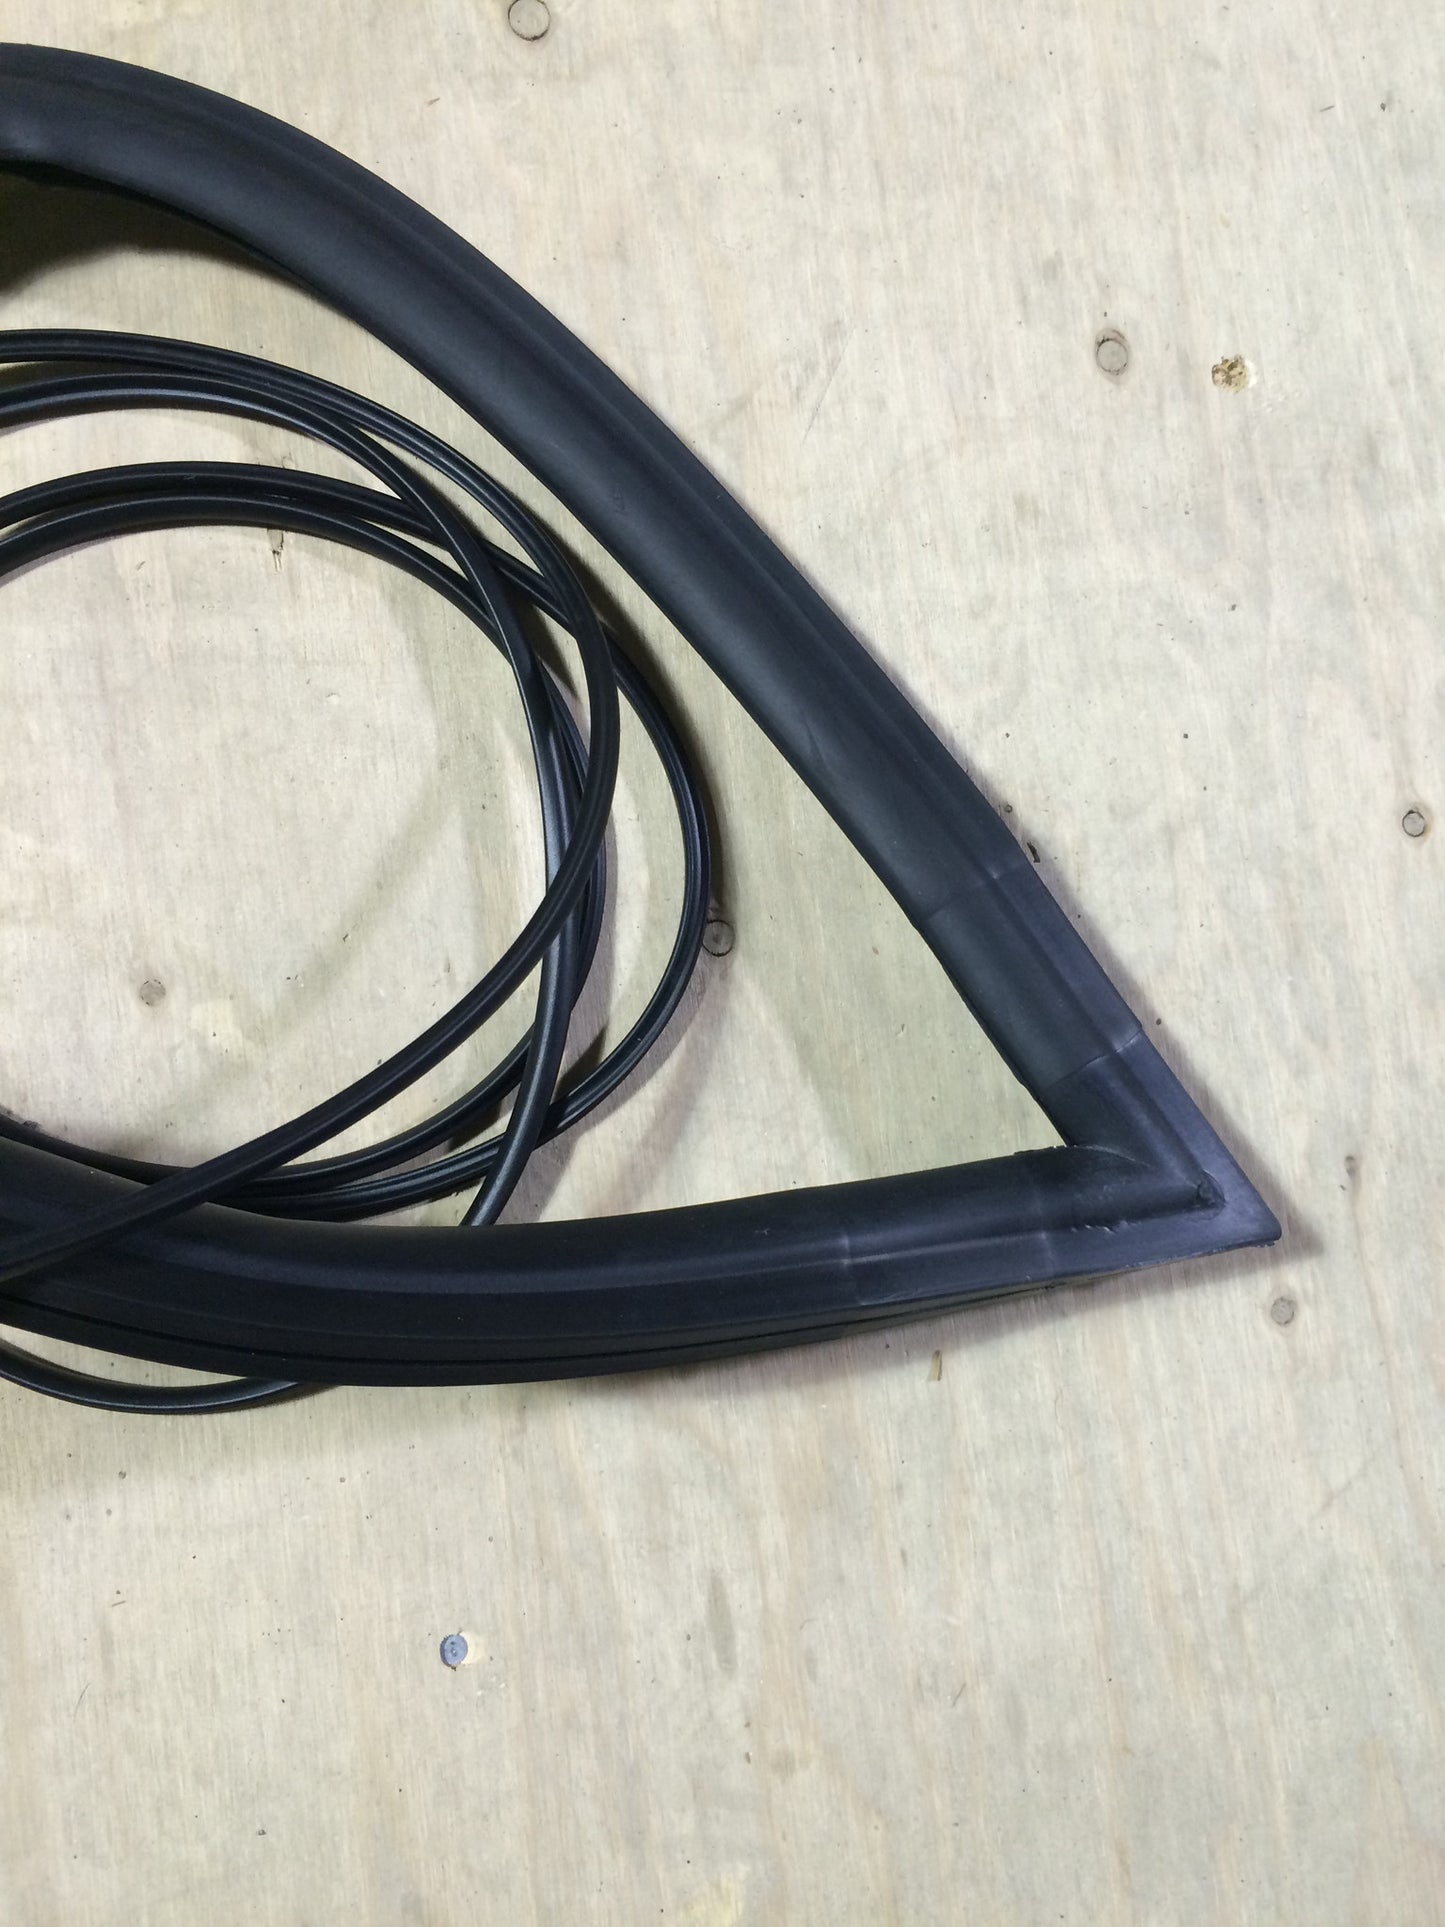 Austin Healey Sprite Windshield rubber glazing seal gasket w/ Lockstrip Exterior - Bugeye